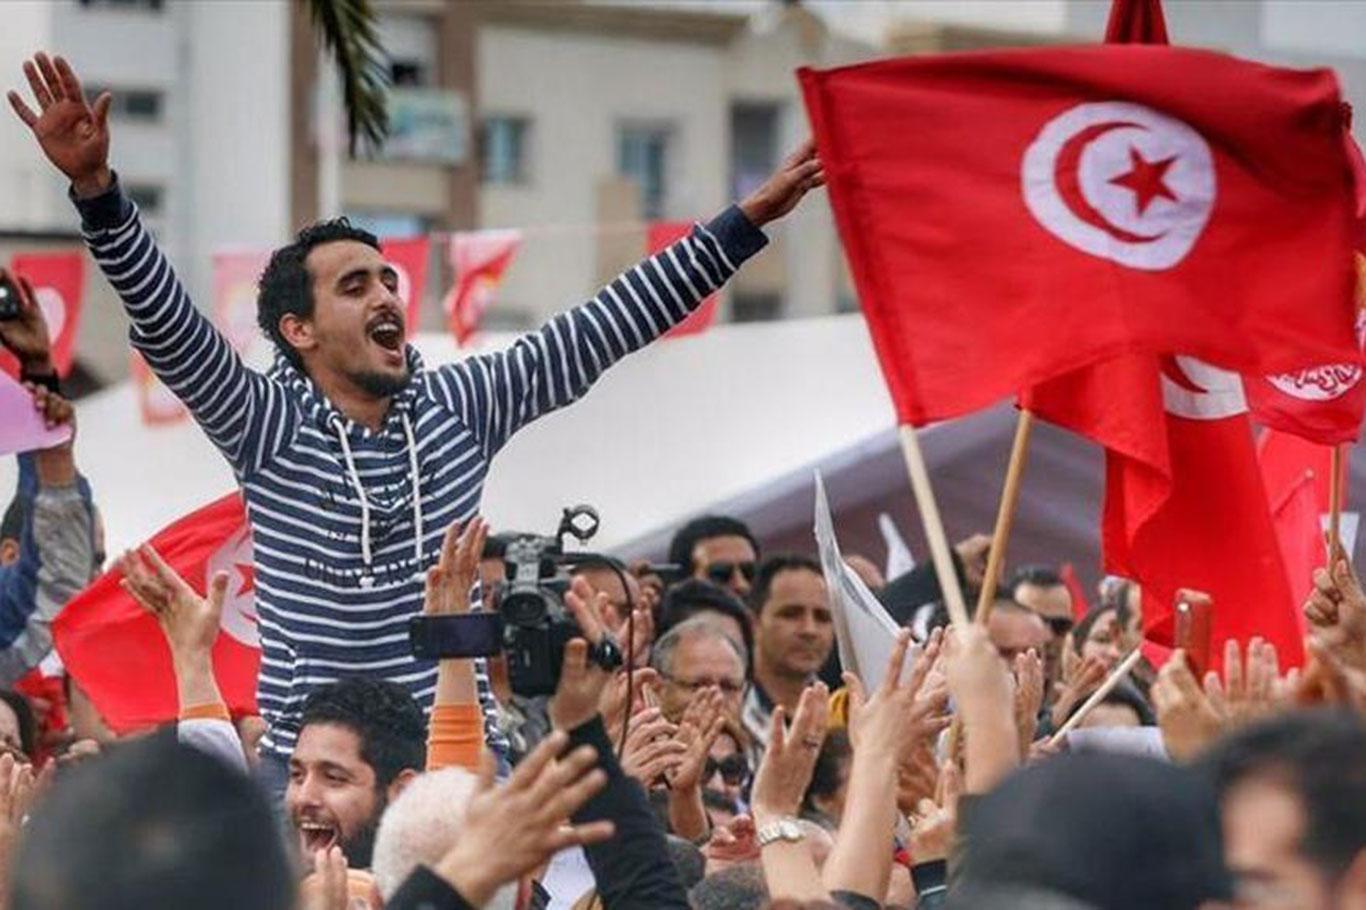 تونس 2019.. عام متخم بالتحديات الداخلية والخارجية والبلاد تجتاز استحقاقاته بنجاح